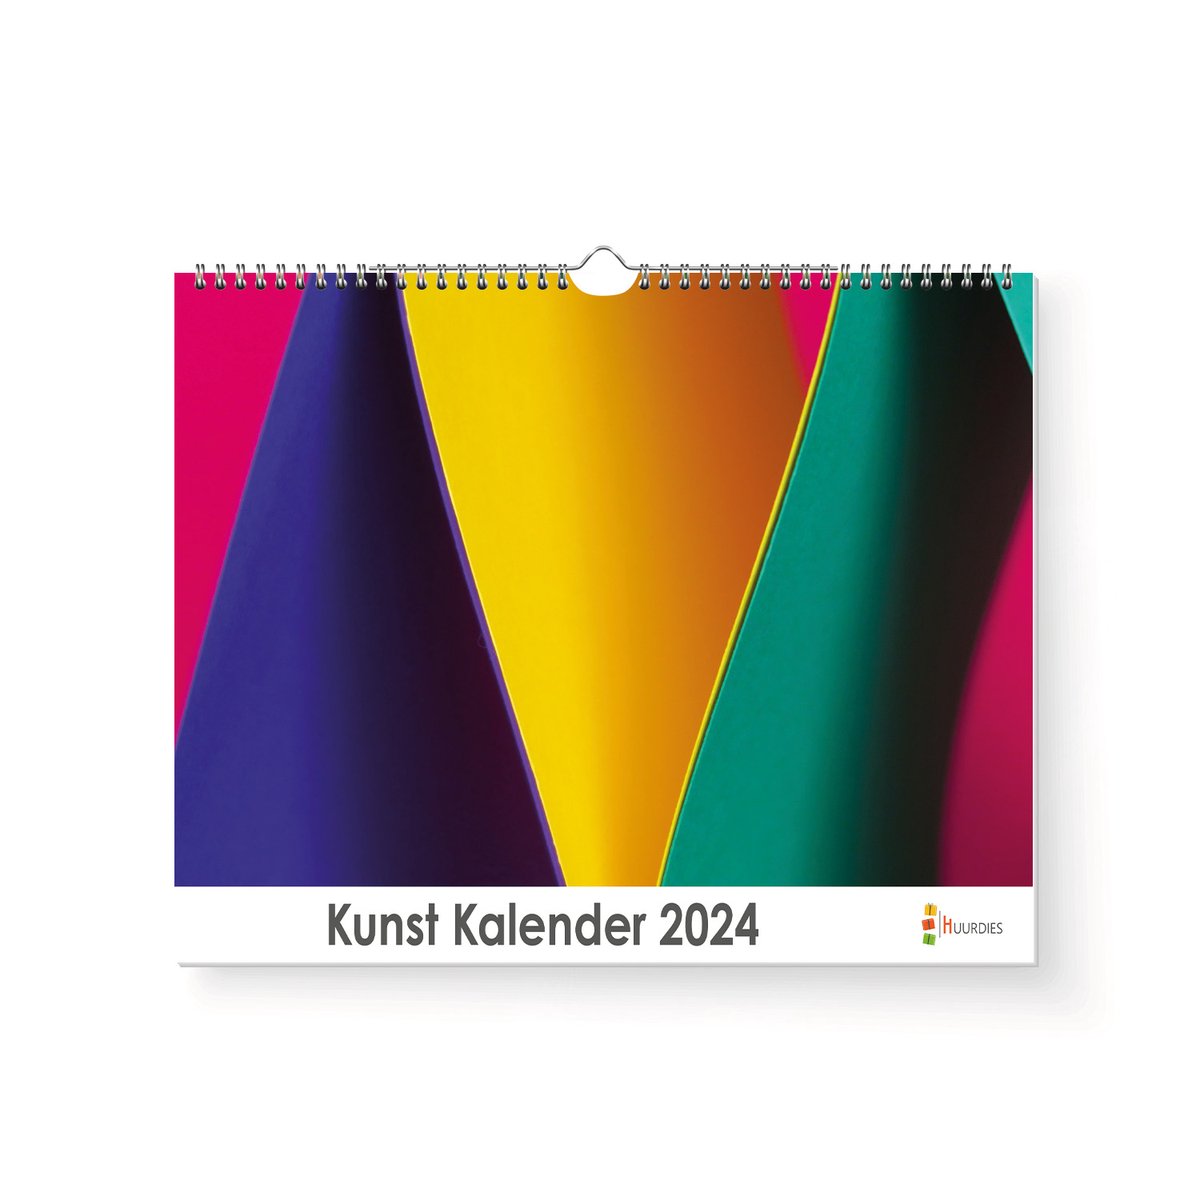 Huurdies - Kunst Kalender - Jaarkalender 2024 - 35x24 - 300gms